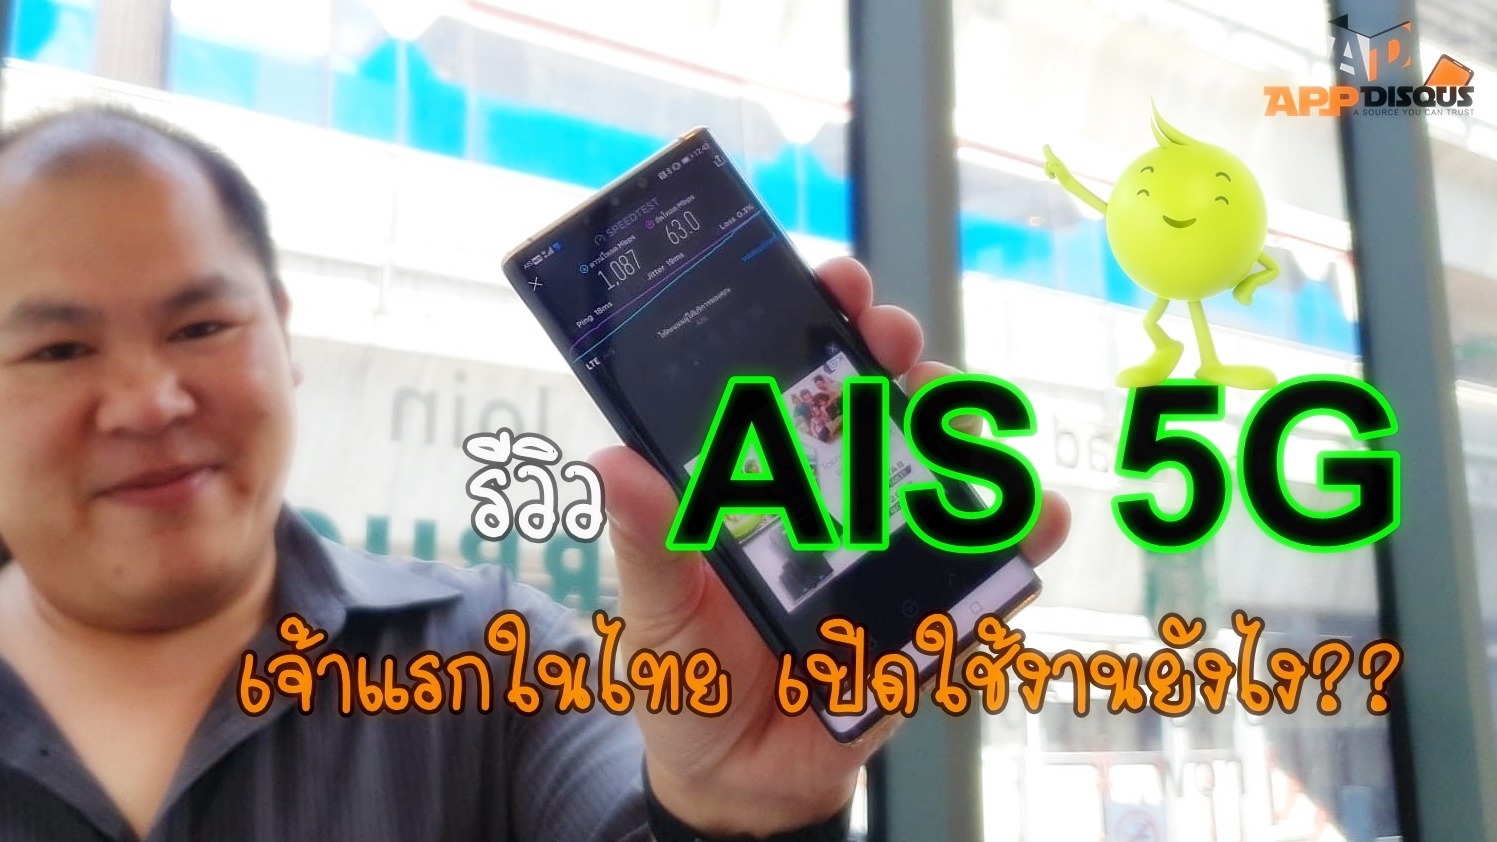 AIS 5G review | 5G | รีวิว AIS 5G ทดสอบสัญญาณ 5G เจ้าแรกในไทยและเอเซียตะวันออกเฉียงใต้ พร้อมวิธีเปิดใช้งาน 5G ด้วยตัวเองต้องทำอย่างไร?